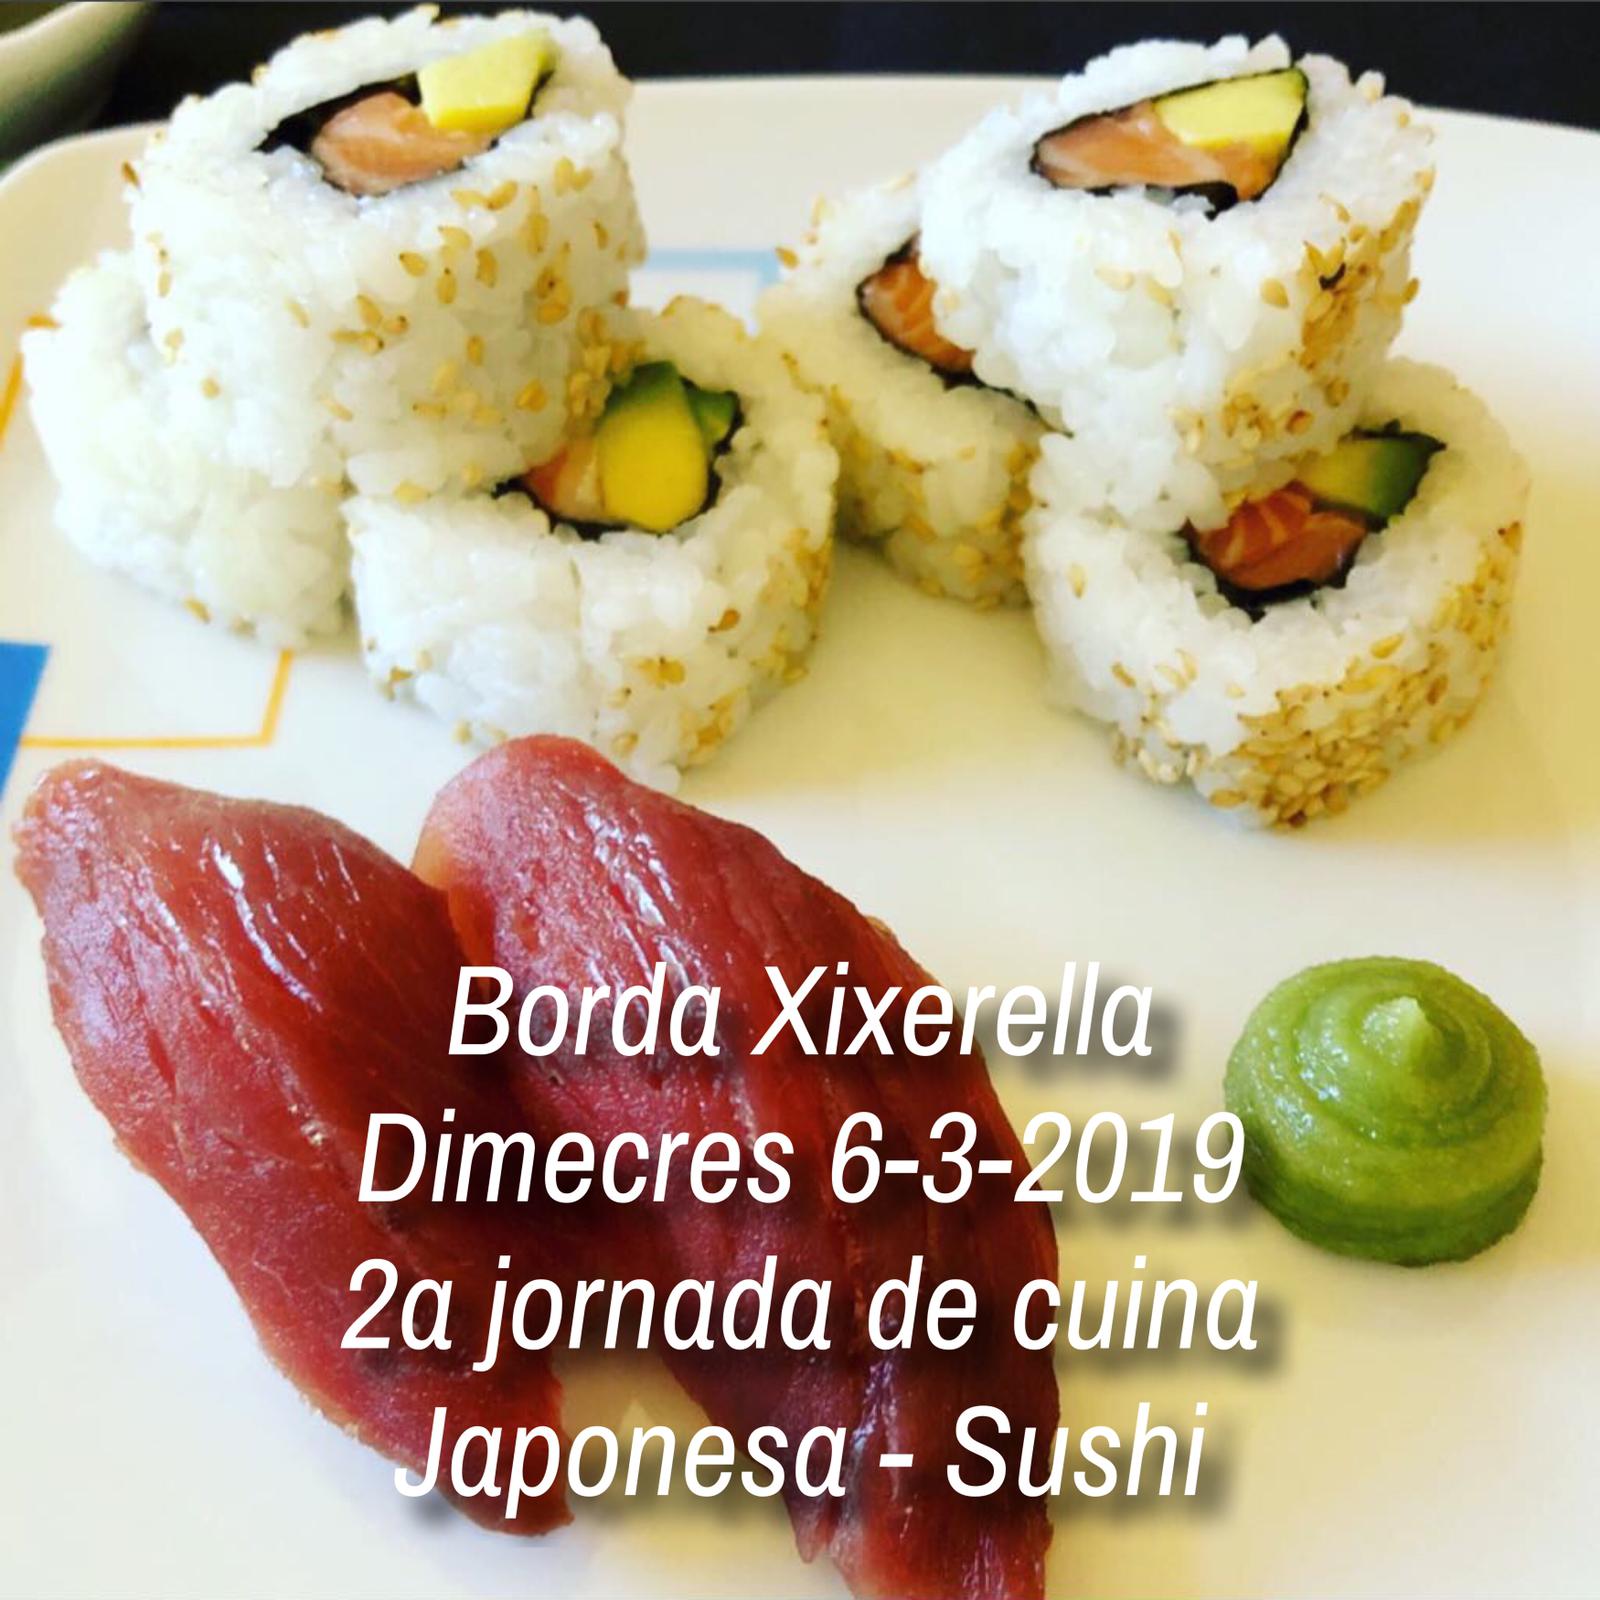 Borda Xixerella – 2a jornada de cuina Japonesa